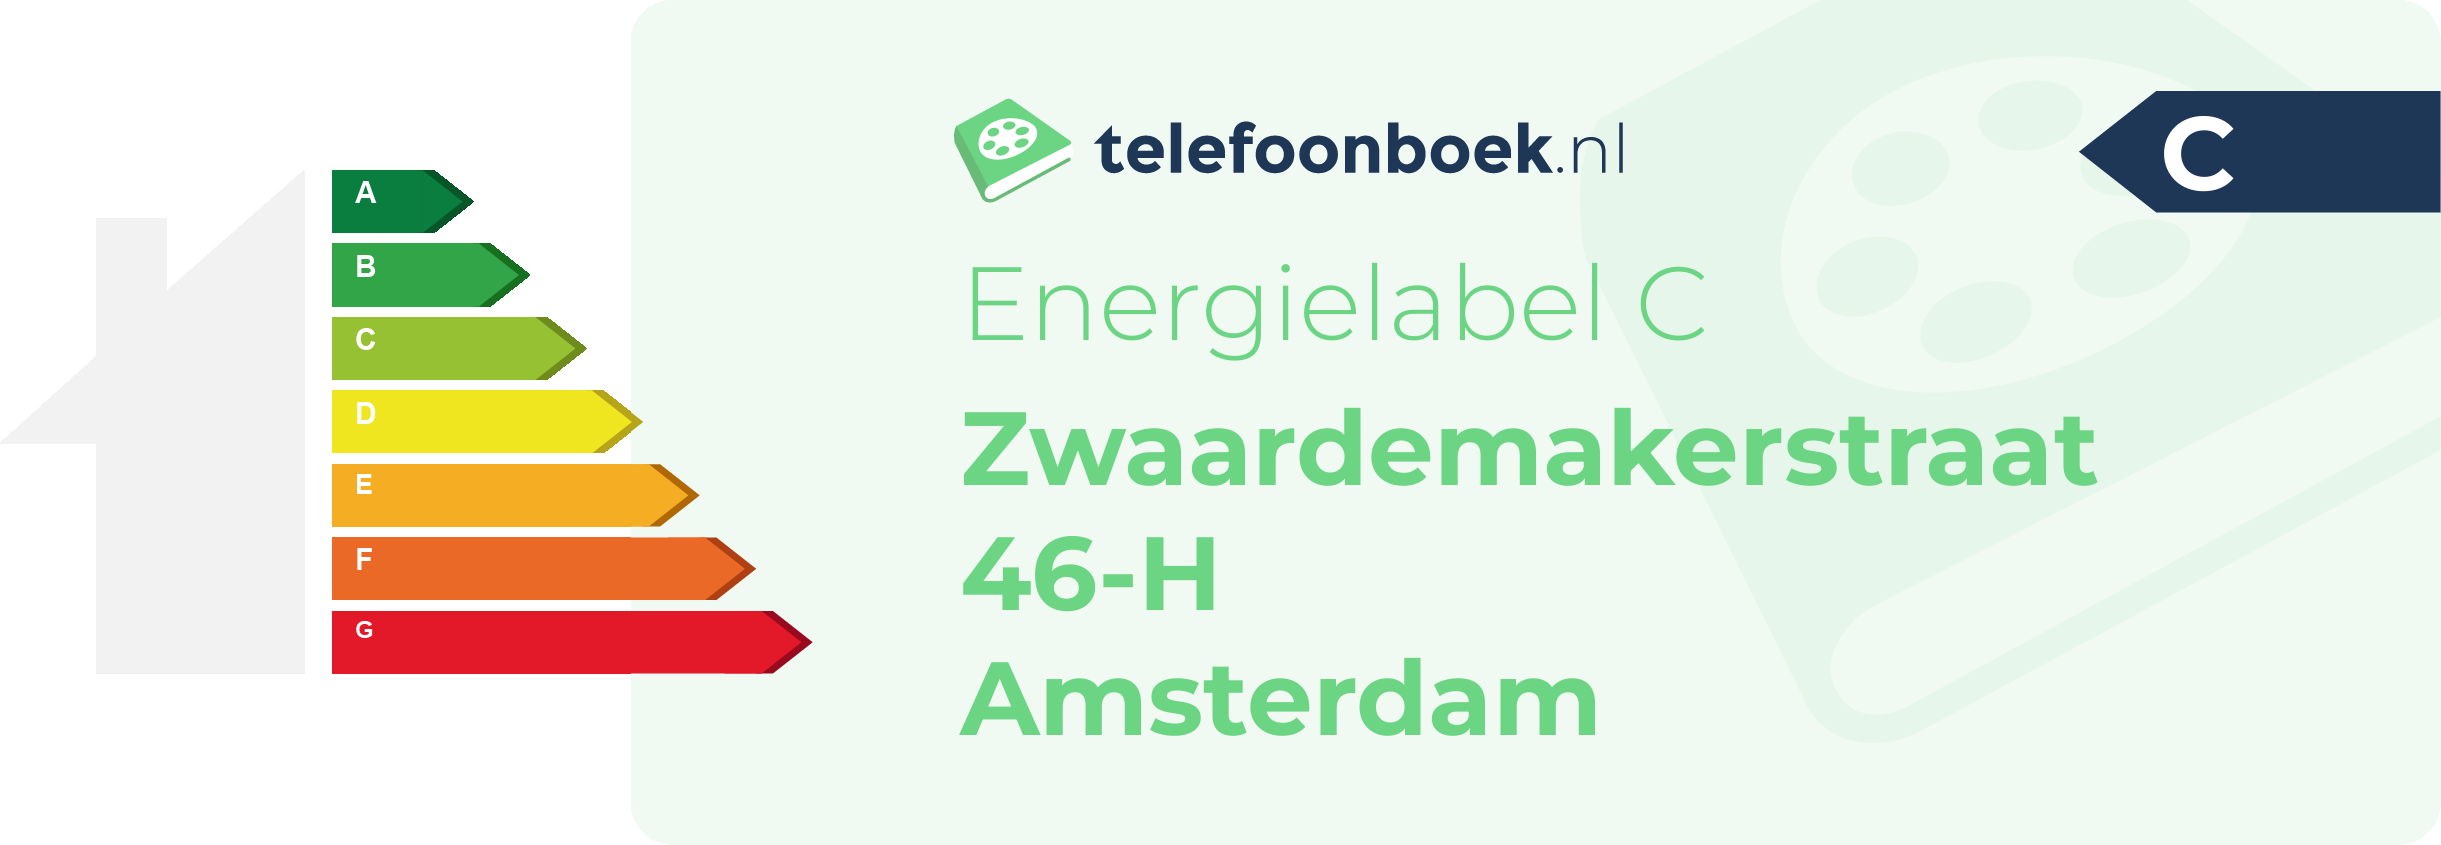 Energielabel Zwaardemakerstraat 46-H Amsterdam